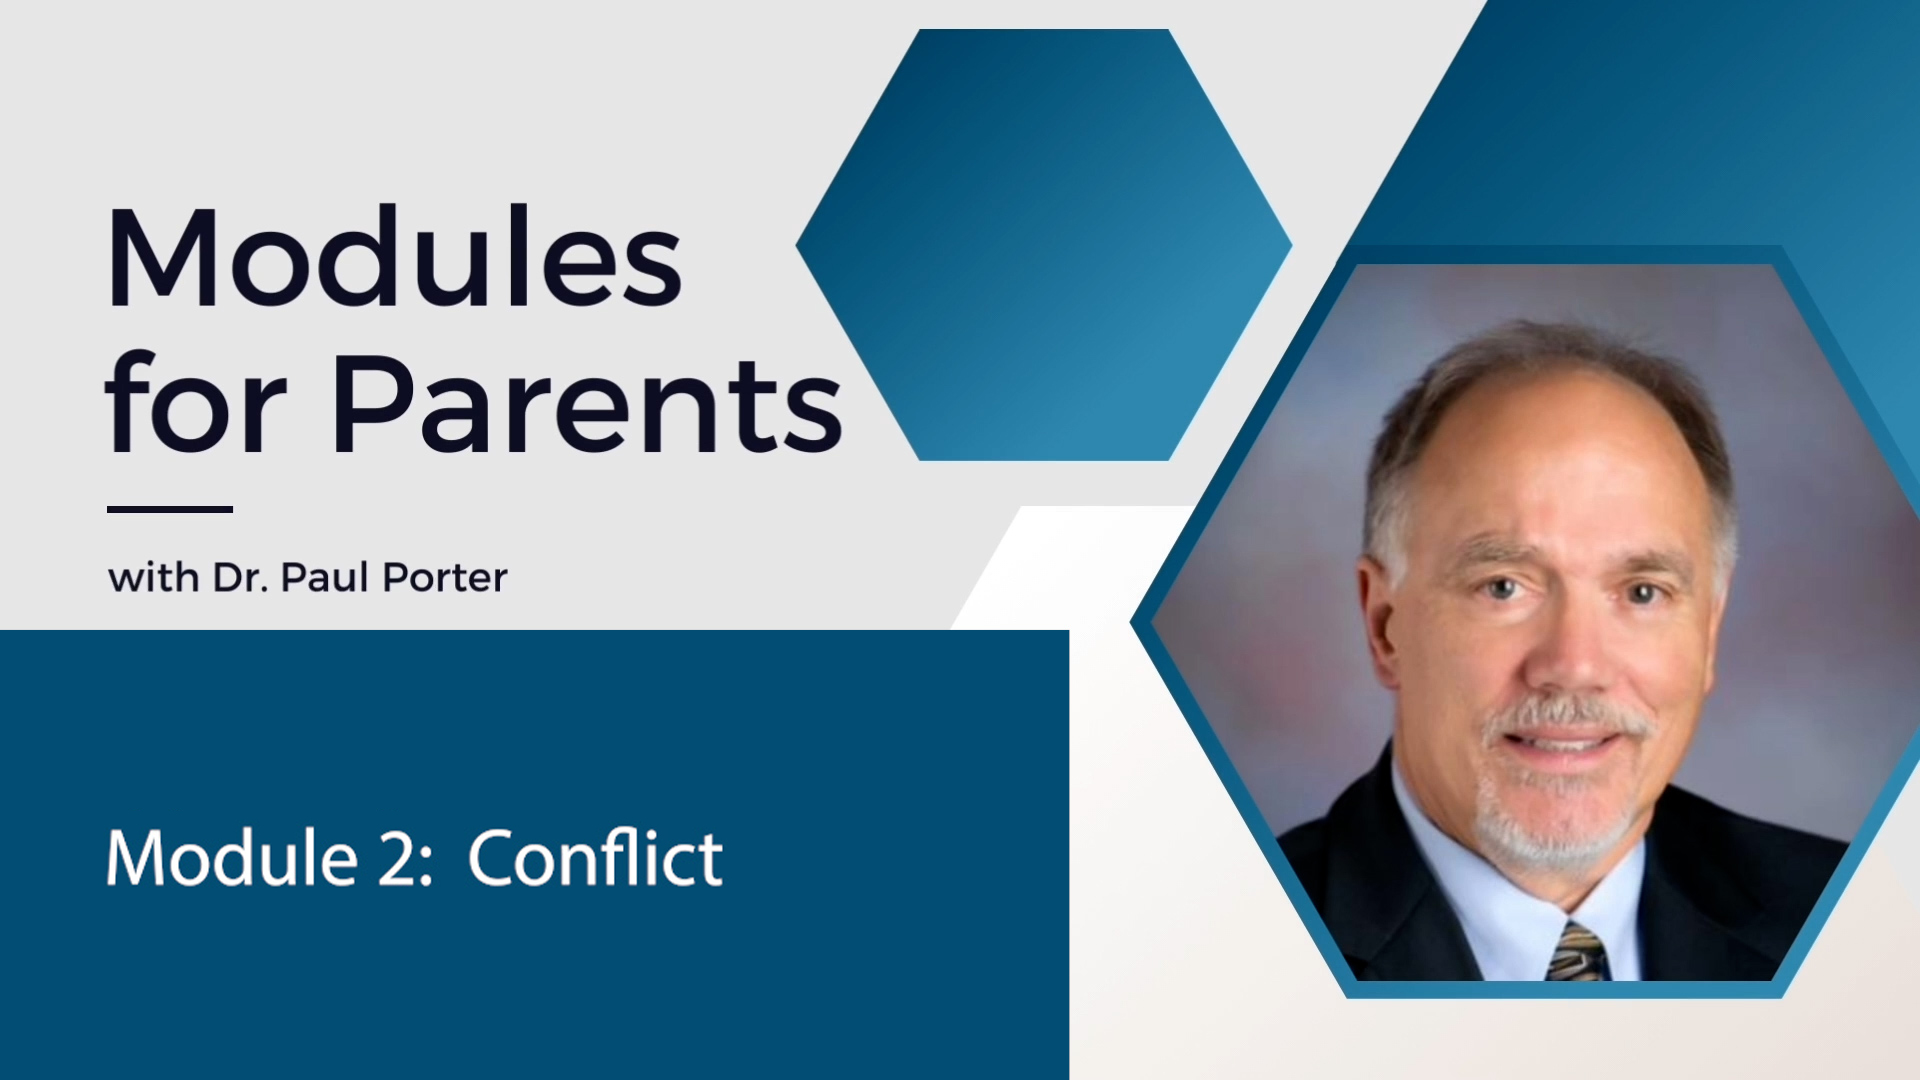 Modules for Parents - Dr. Paul Porter: Module 2